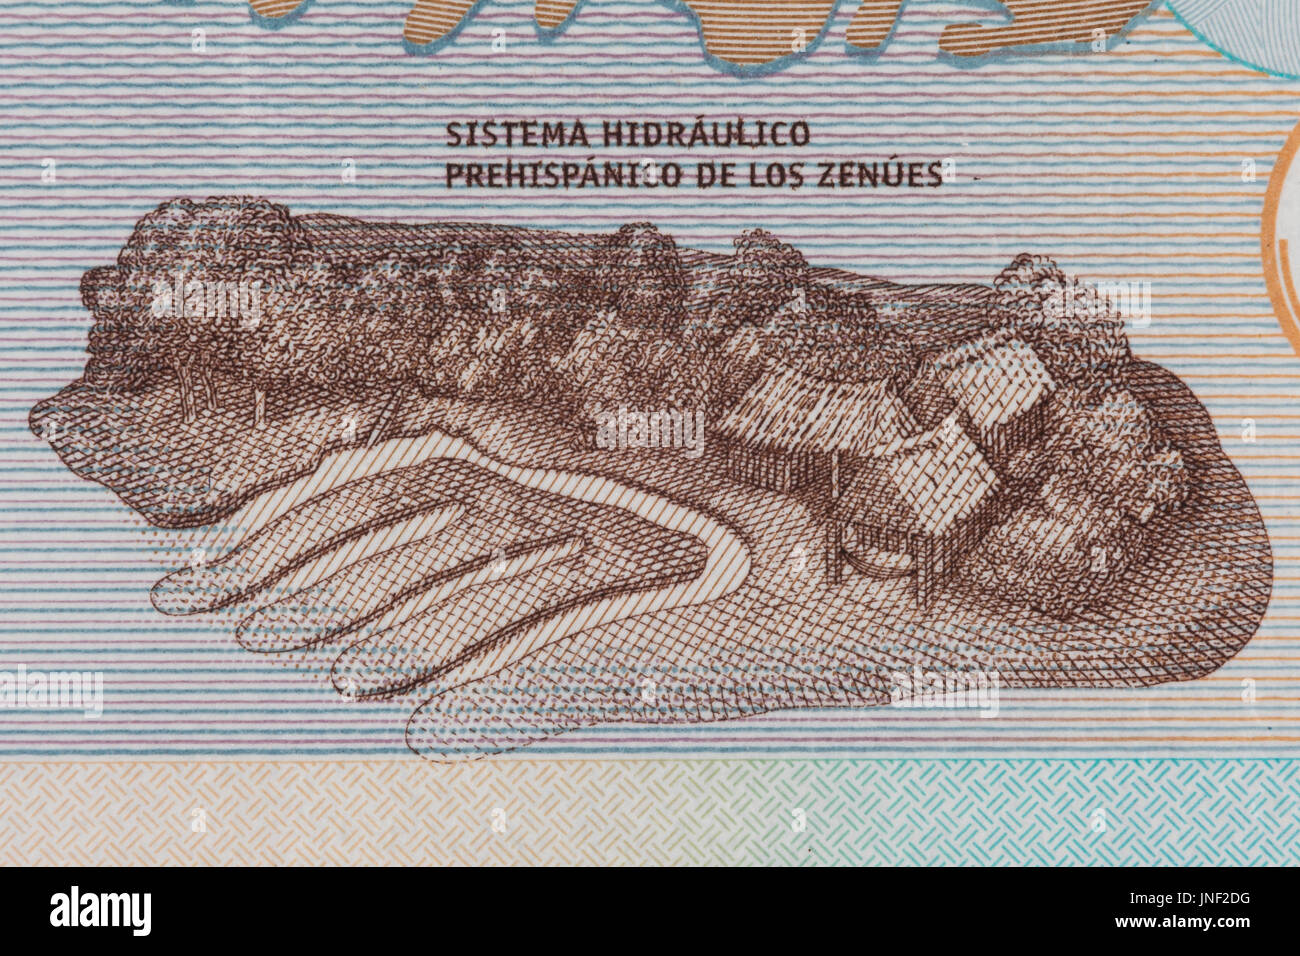 Zenu künstliche Wasserkanäle auf der Rechnung von zwanzigtausend kolumbianische pesos Stockfoto